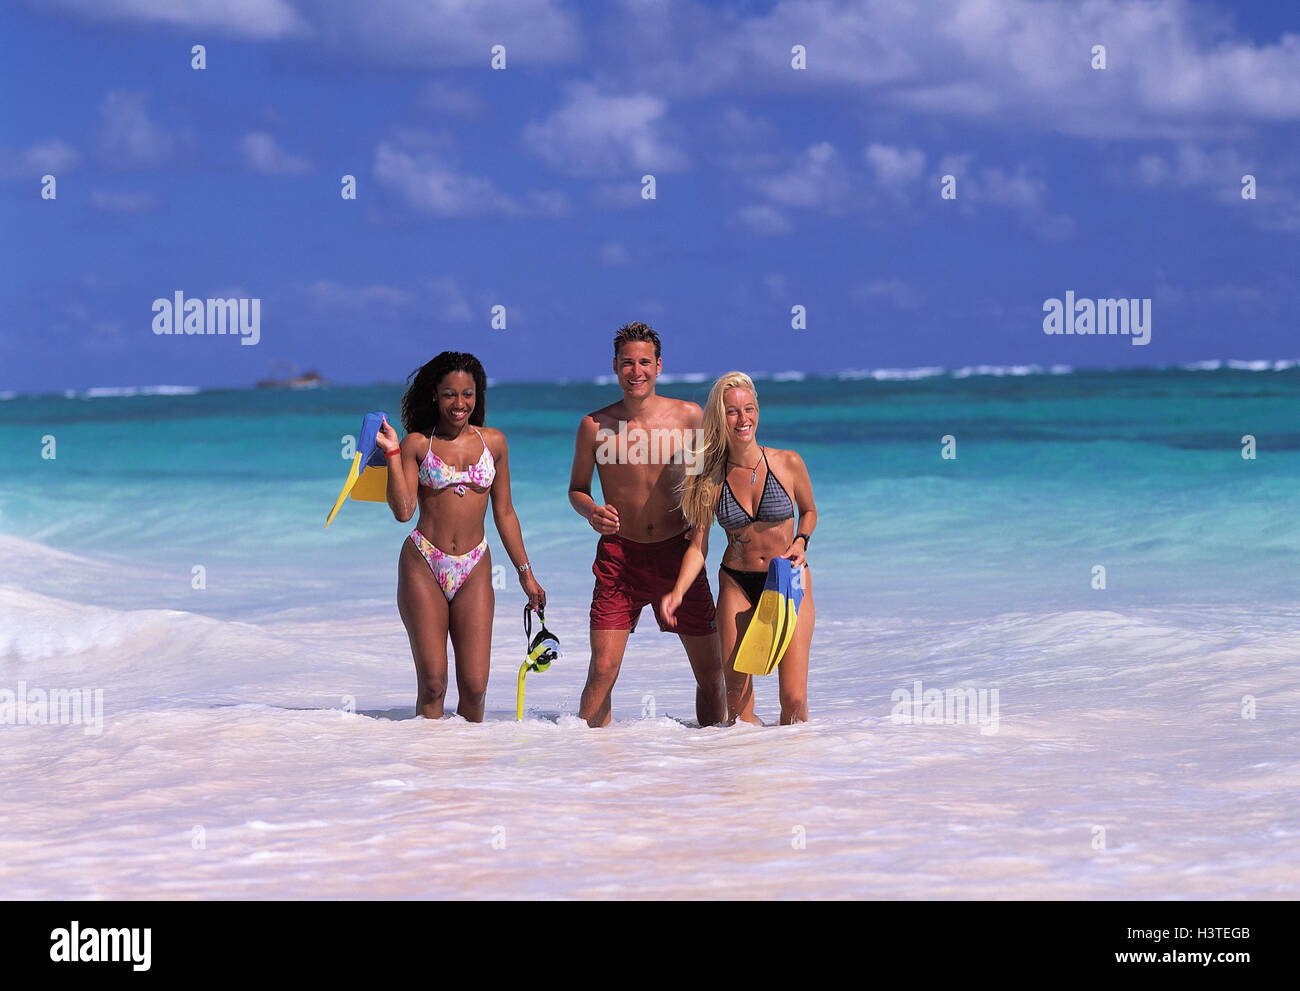 La République dominicaine, Punta Cana, Bavaro, la plage, les femmes, les deux, l'homme, de l'eau, faible profondeur, stand de jeunes, vacances, piscine palmes, femme, équipement de plongée, la mer, les ailerons Banque D'Images